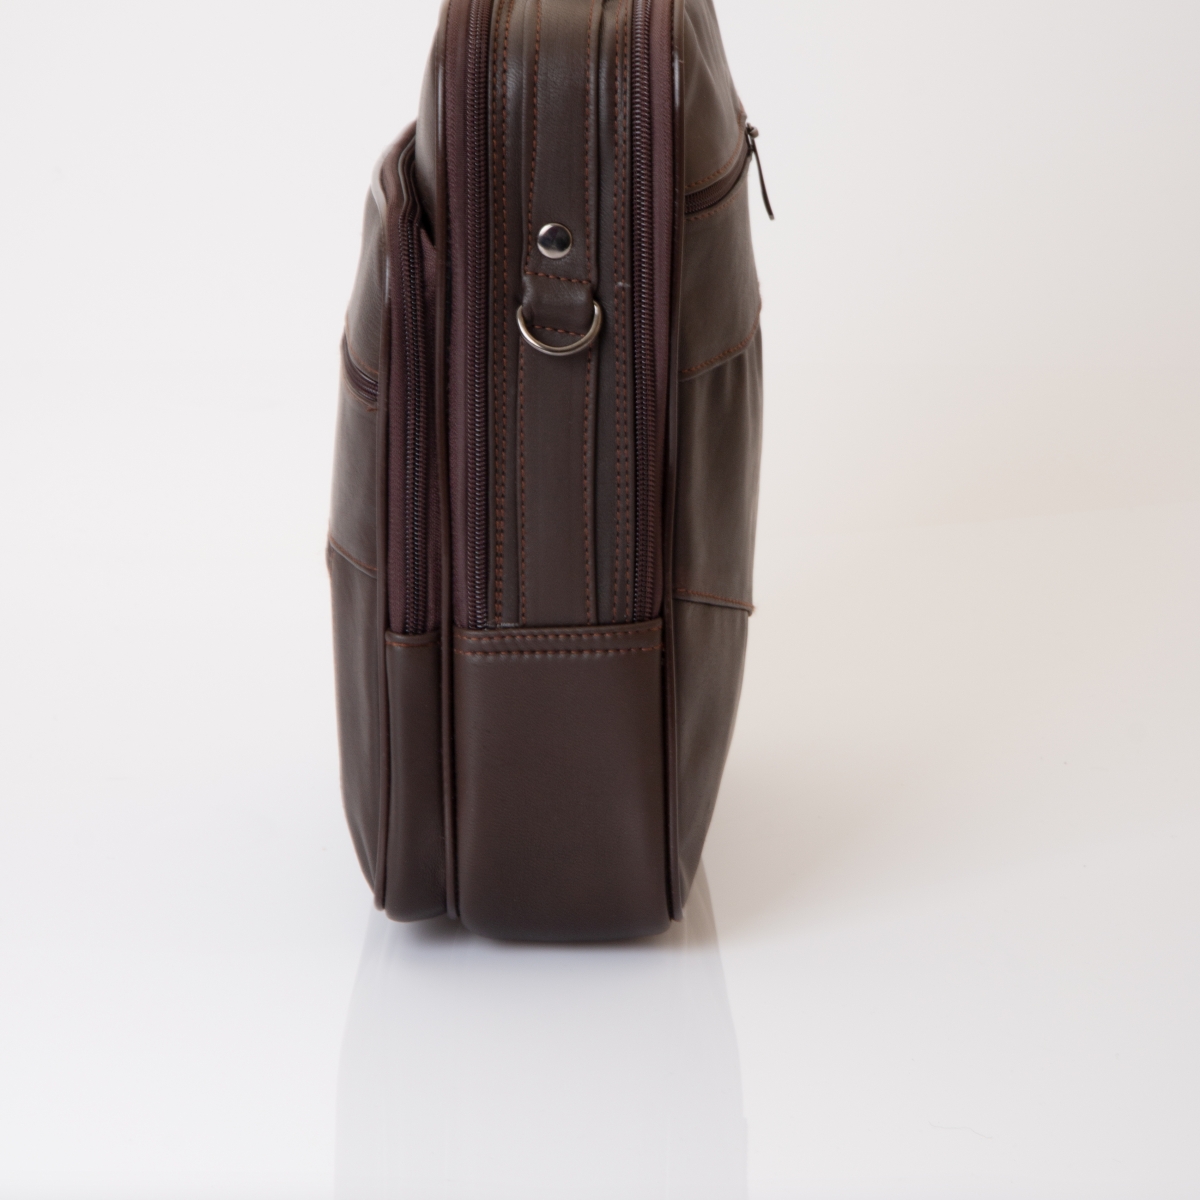 Flo nw-3009 büyük boy hakiki deri kasalı erkek el ve omuz çantası KAHVE. 5